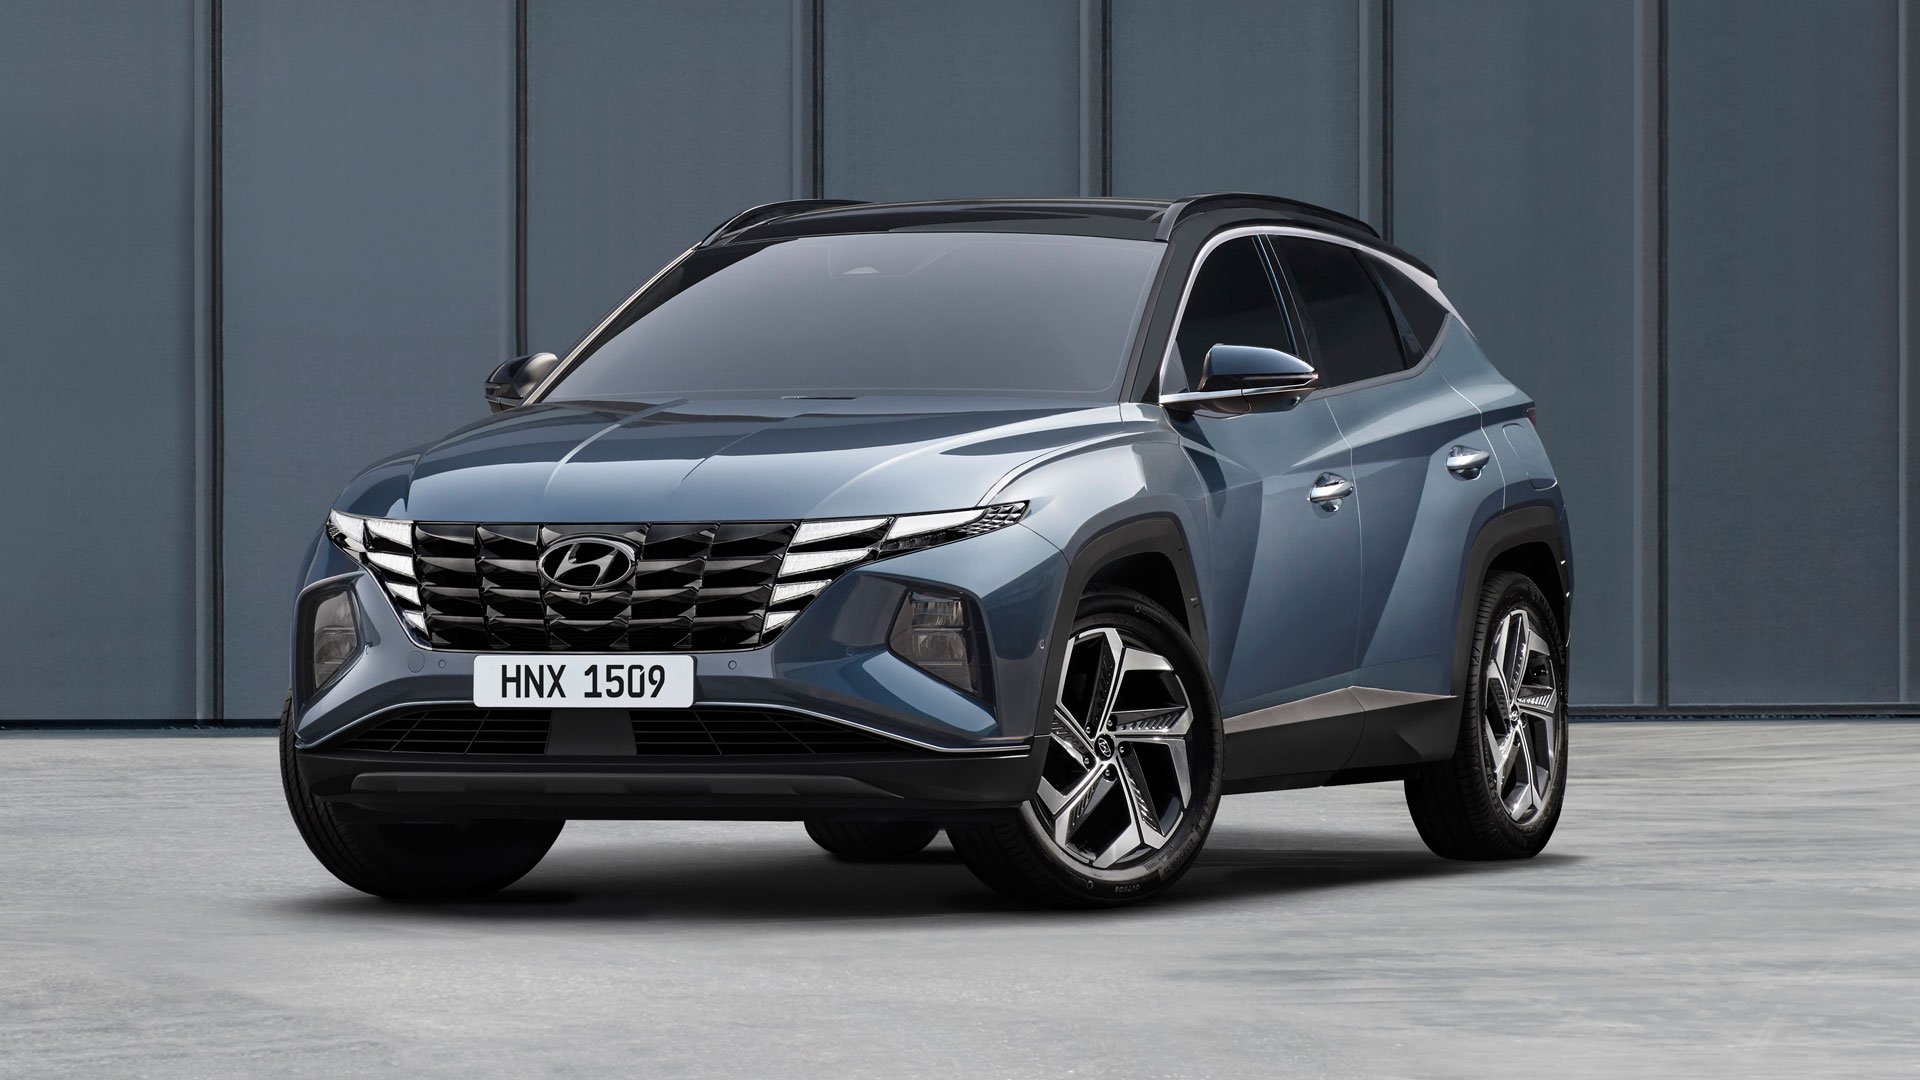 Hyundai Tucson hybride : consommation, prix, autonomie - Automobile Propre